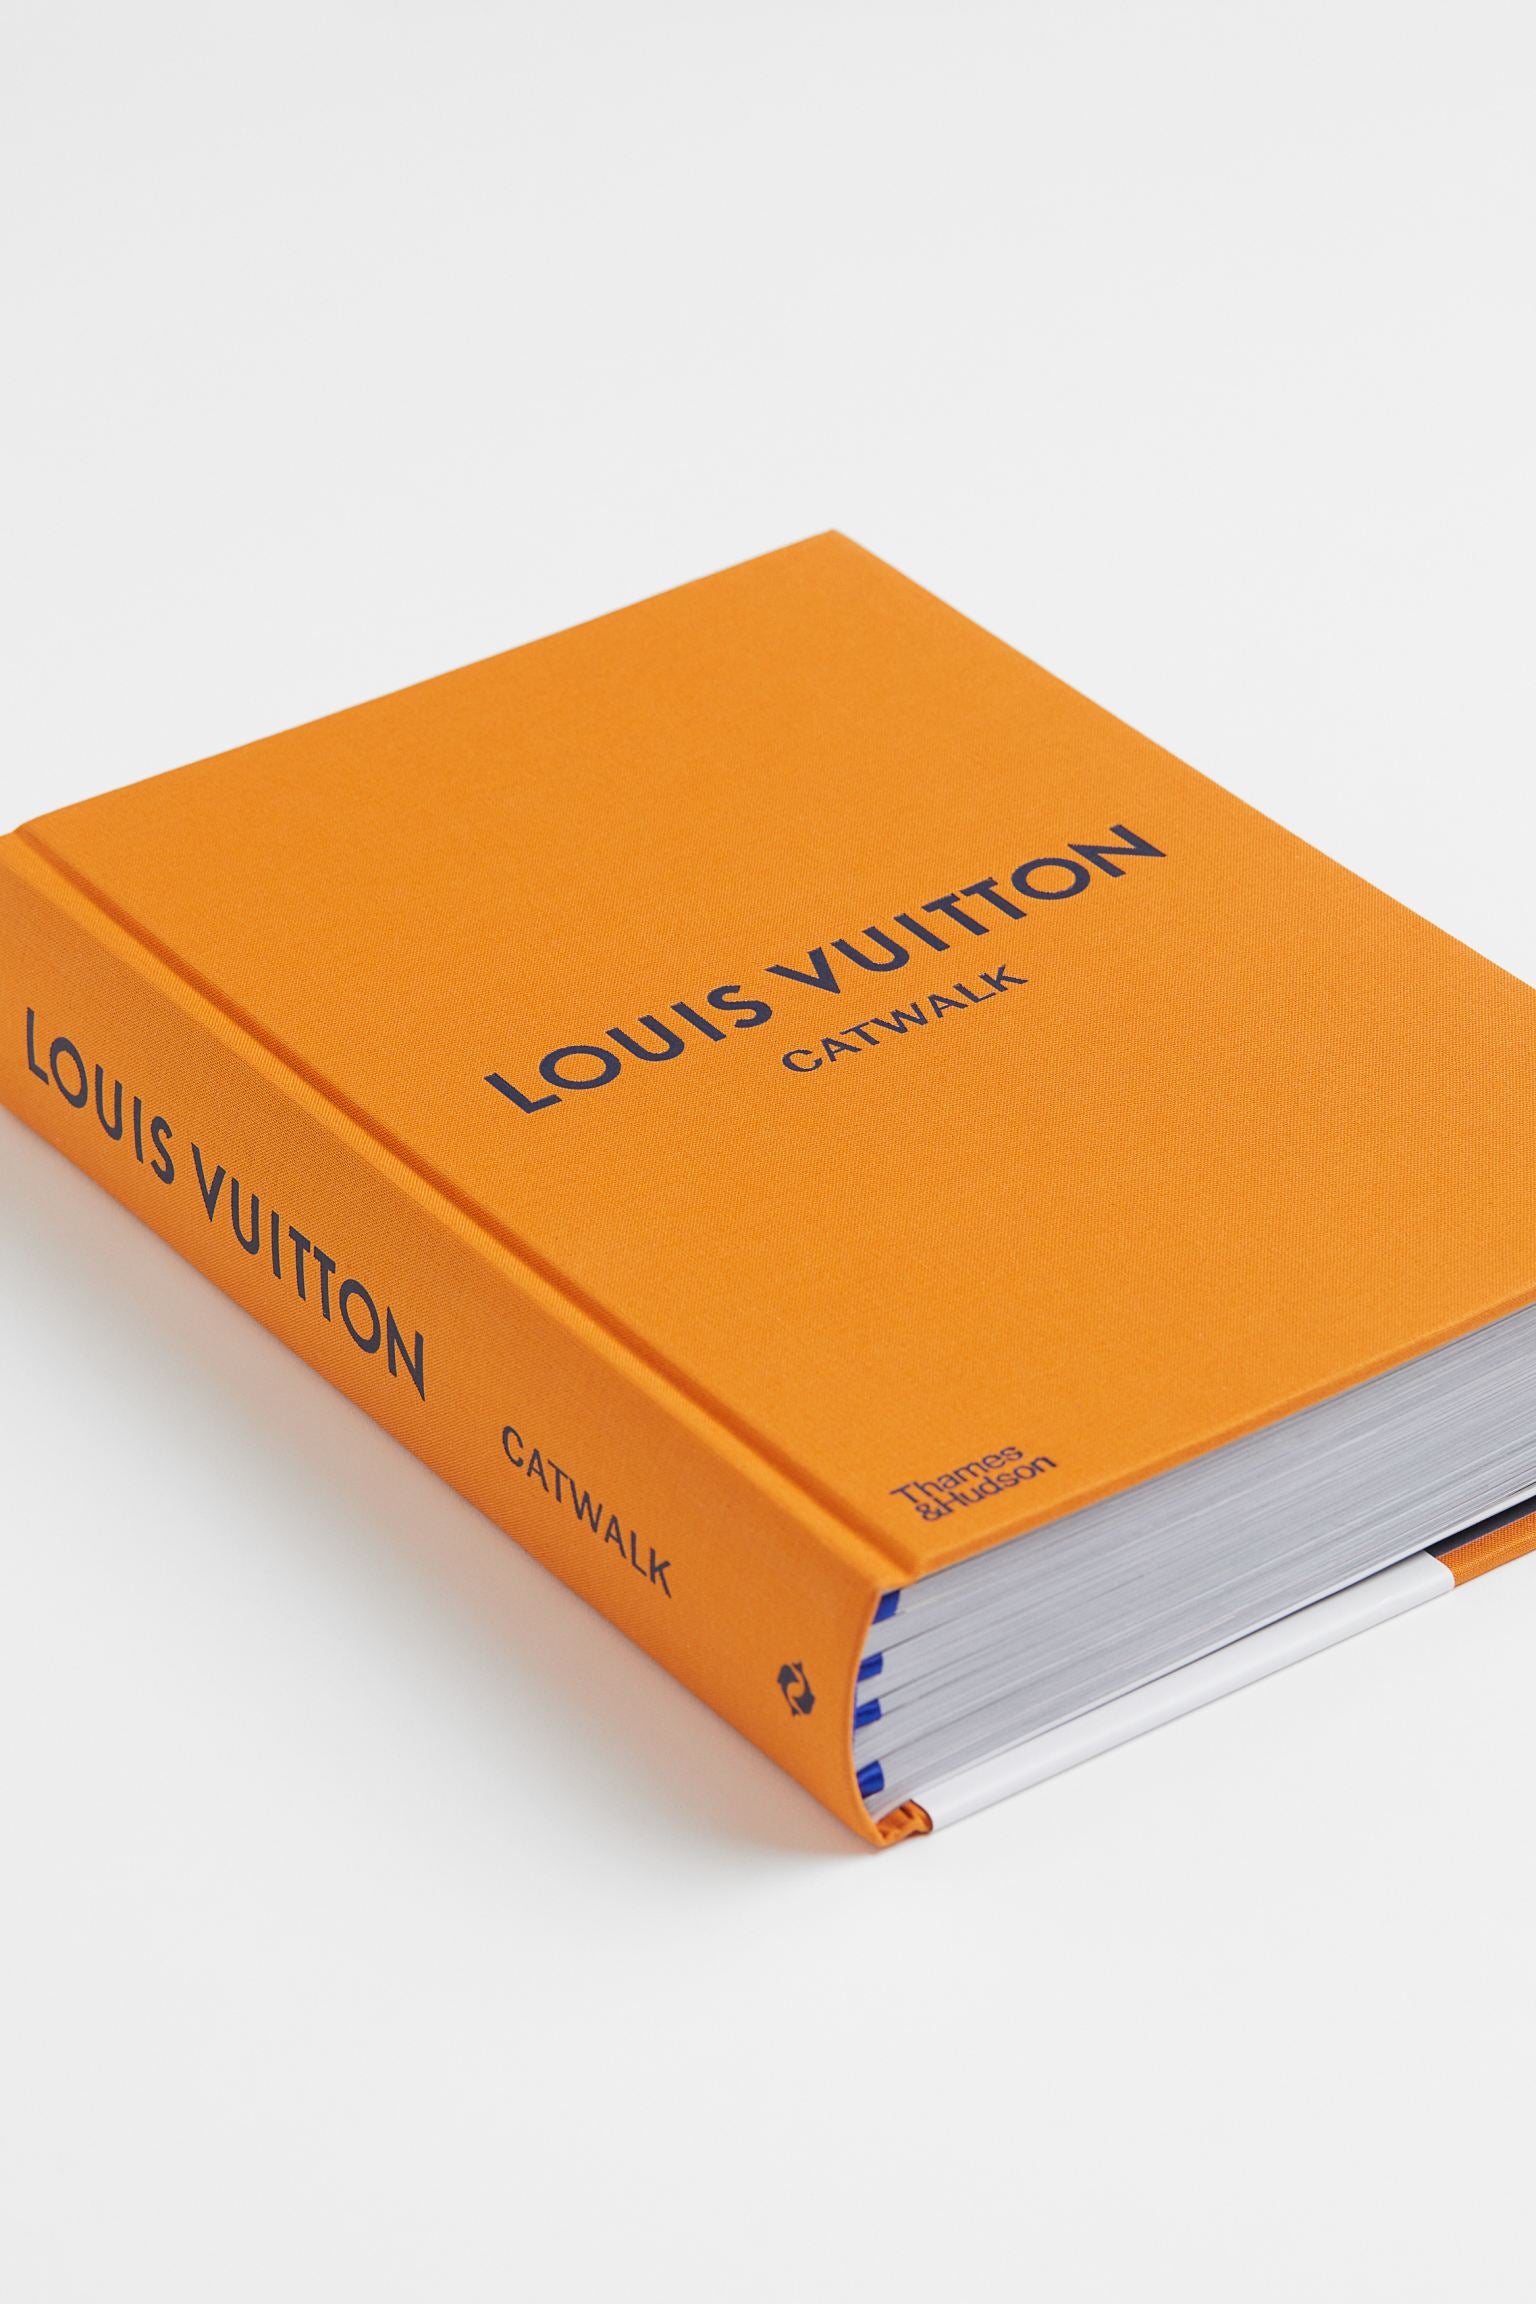 Louis Vuitton Monogram Canvas Train Case – catwalk